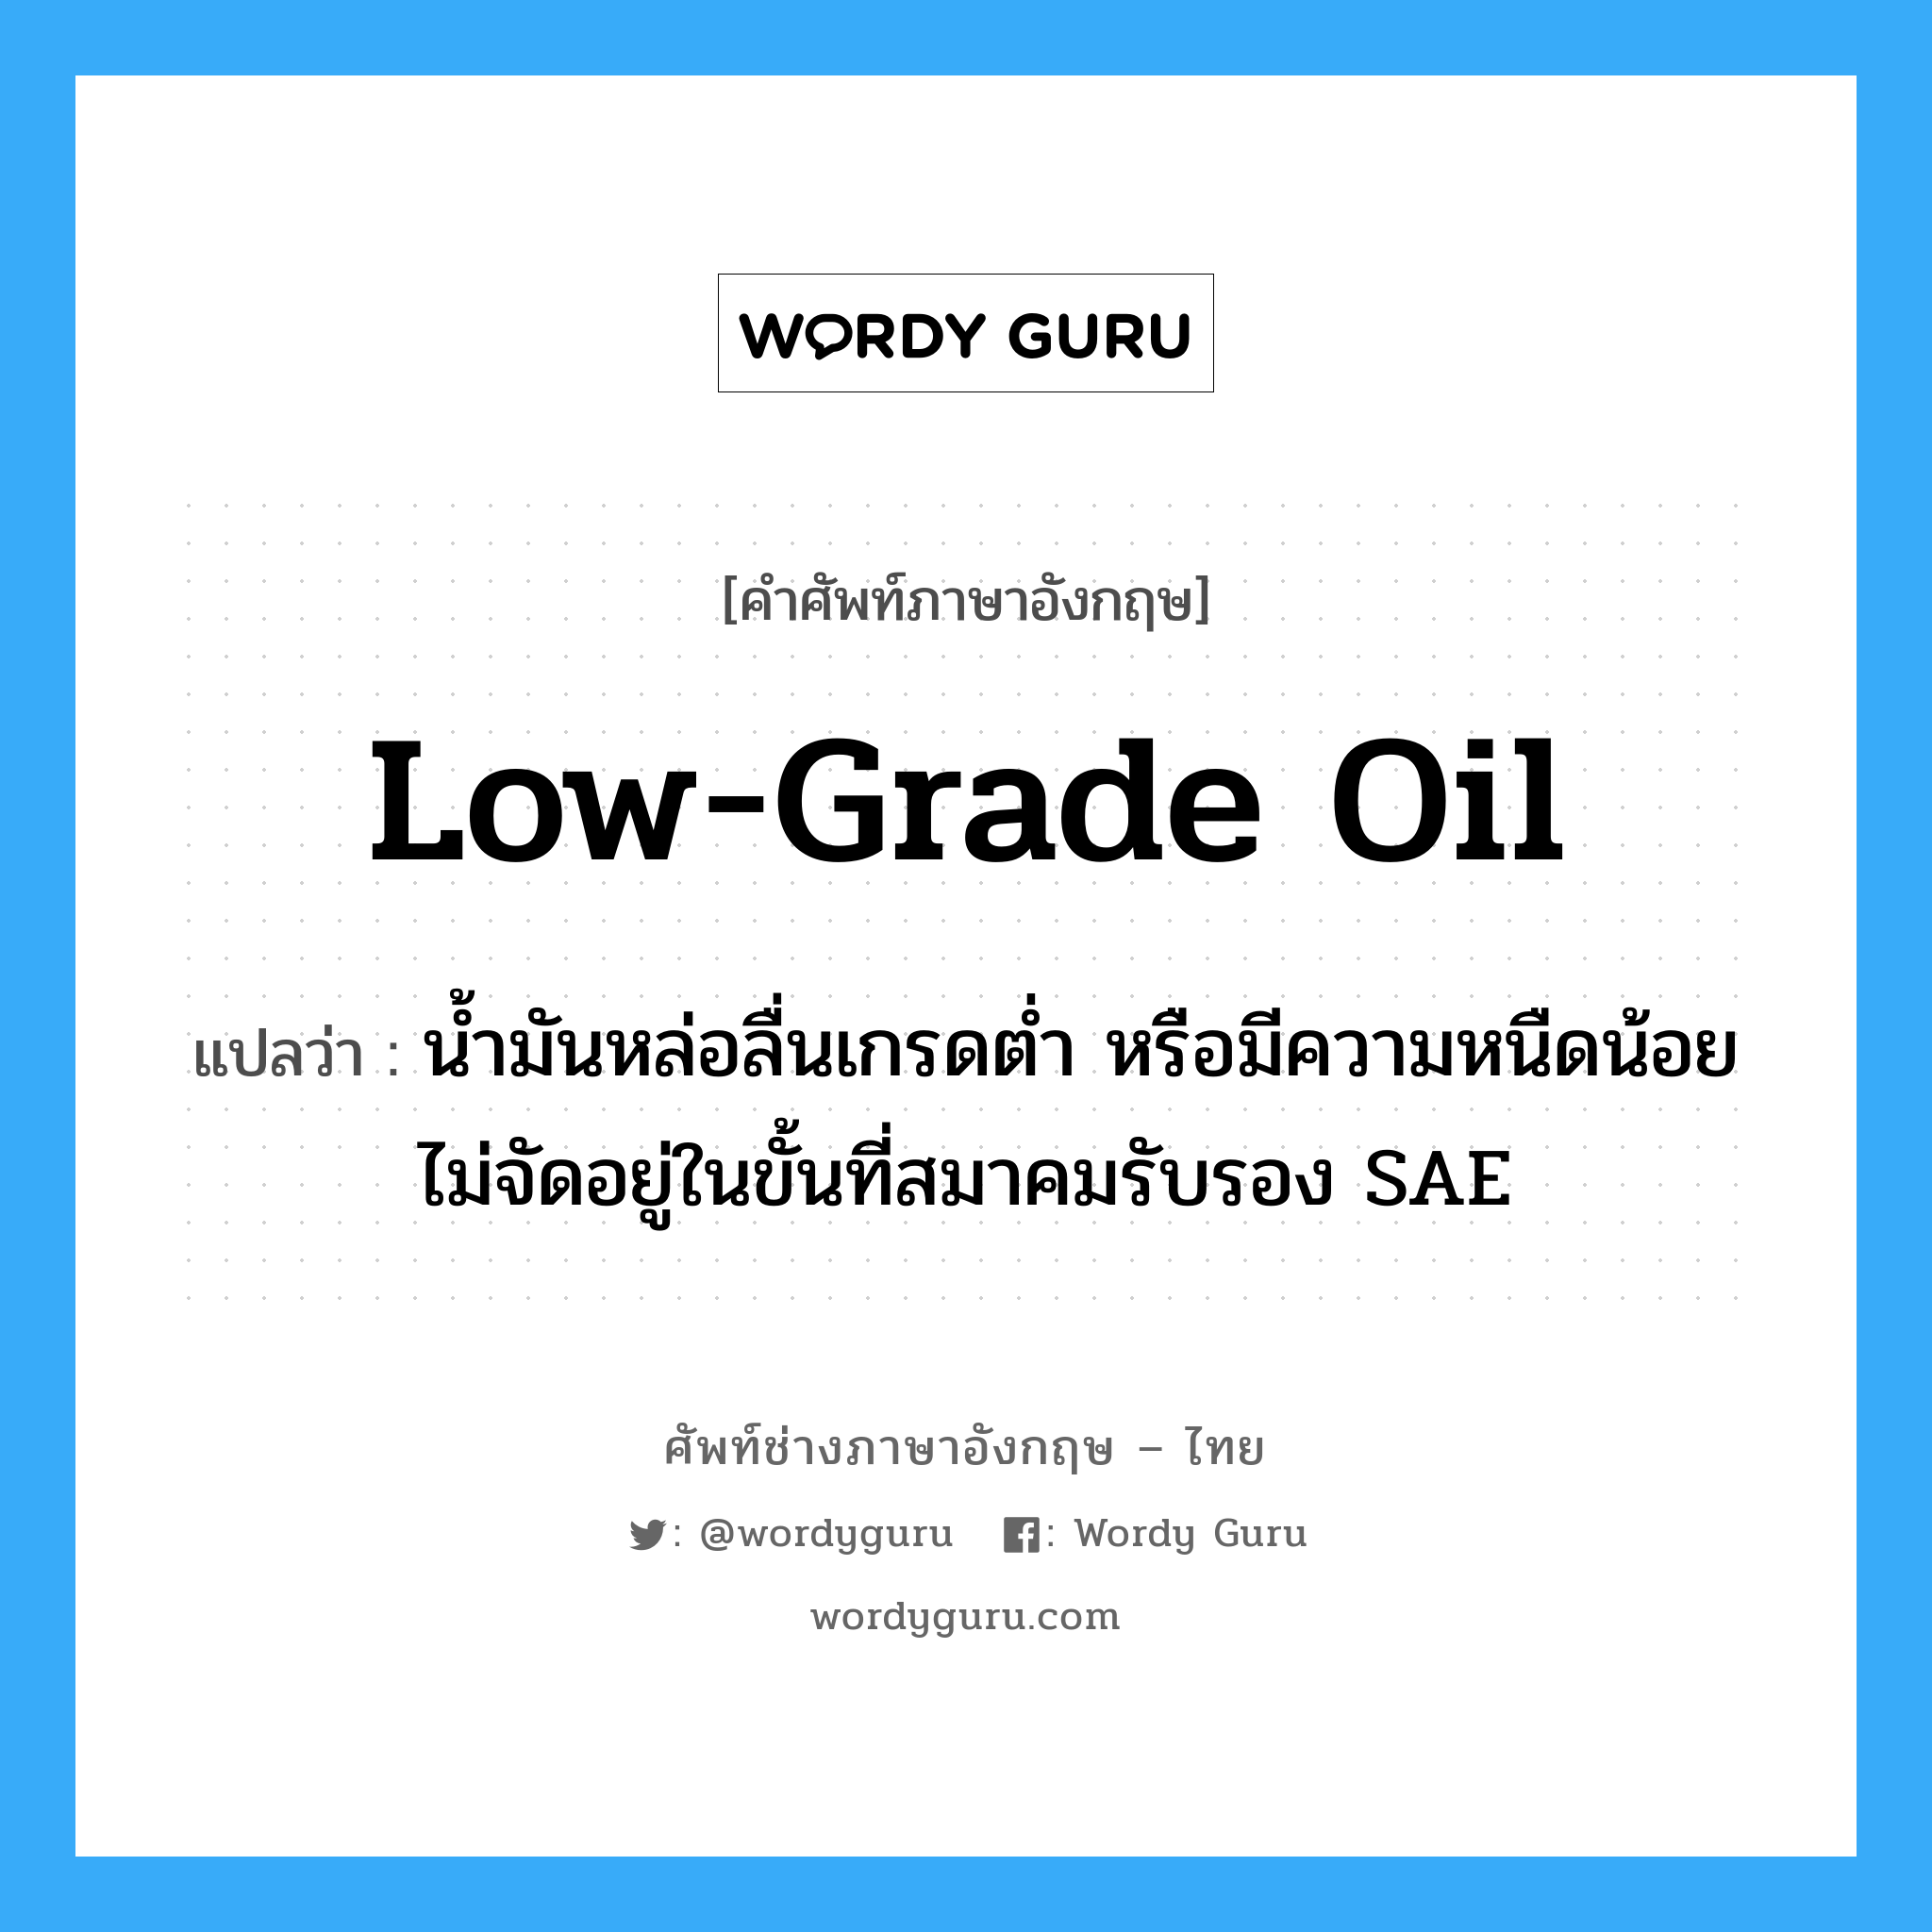 low-grade oil แปลว่า?, คำศัพท์ช่างภาษาอังกฤษ - ไทย low-grade oil คำศัพท์ภาษาอังกฤษ low-grade oil แปลว่า น้ำมันหล่อลื่นเกรดต่ำ หรือมีความหนืดน้อยไม่จัดอยู่ในขั้นที่สมาคมรับรอง SAE